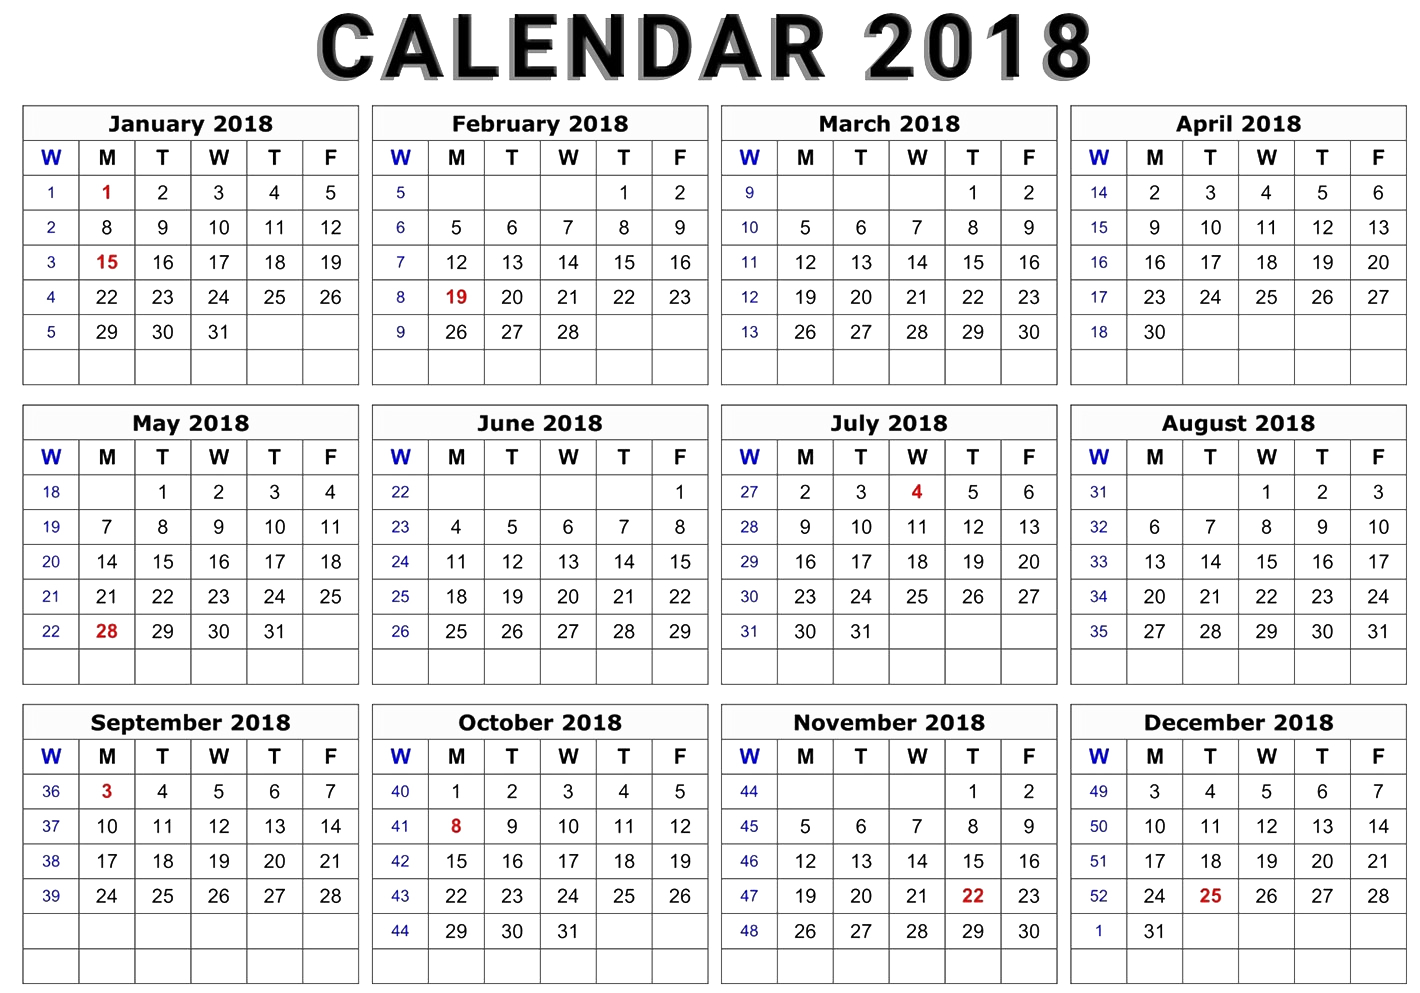 Immagine trasparente del calendario 2018